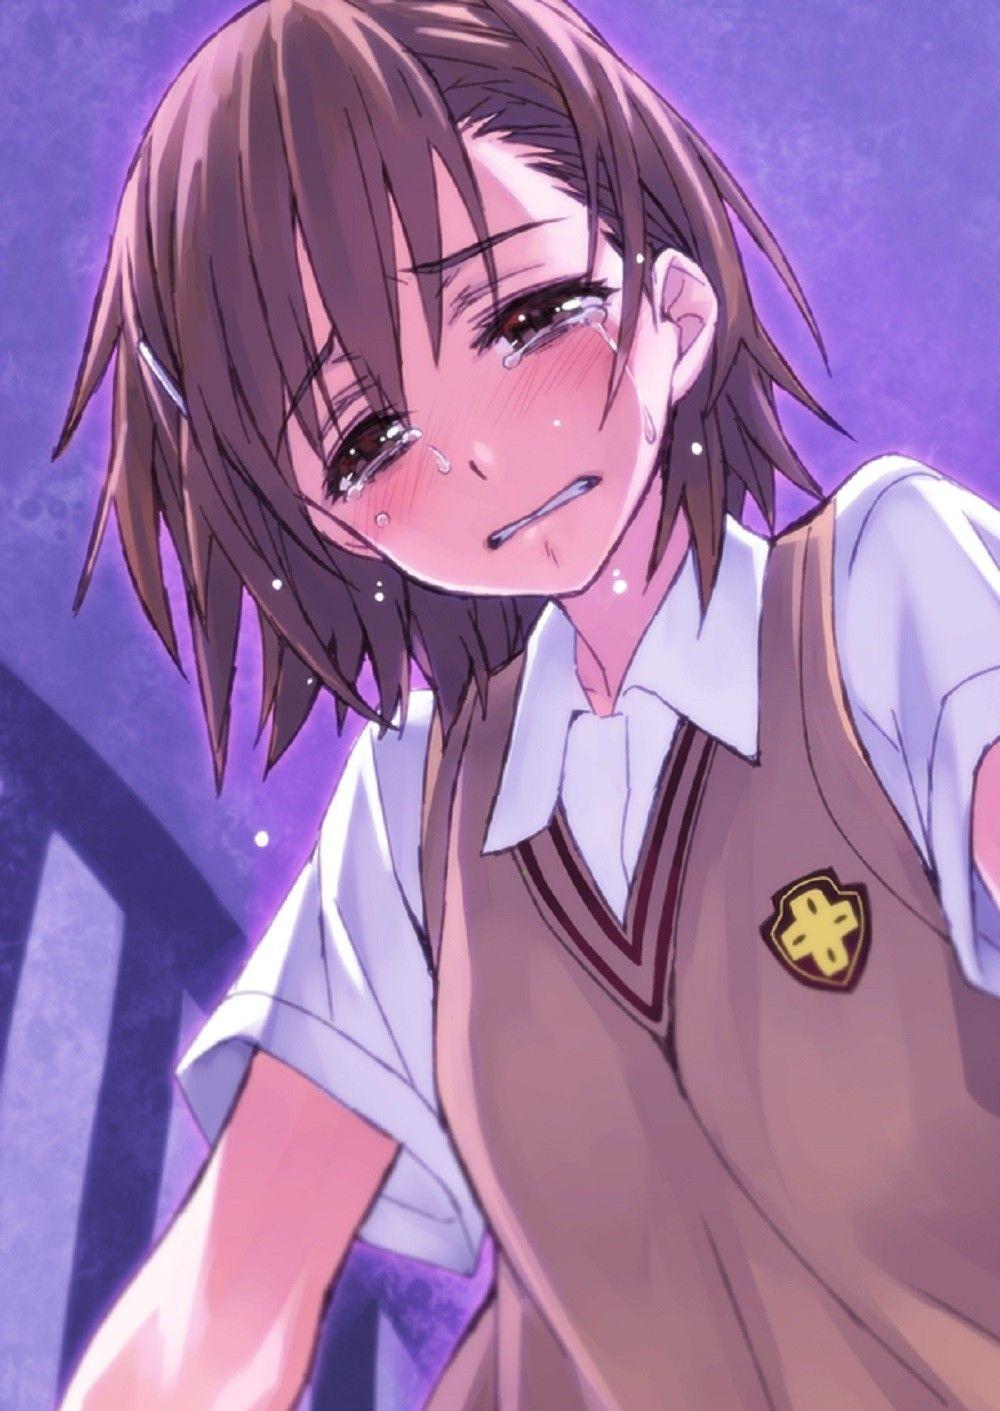 Toaru Kagaku no Railgun, blush, anime, crying, anime girls